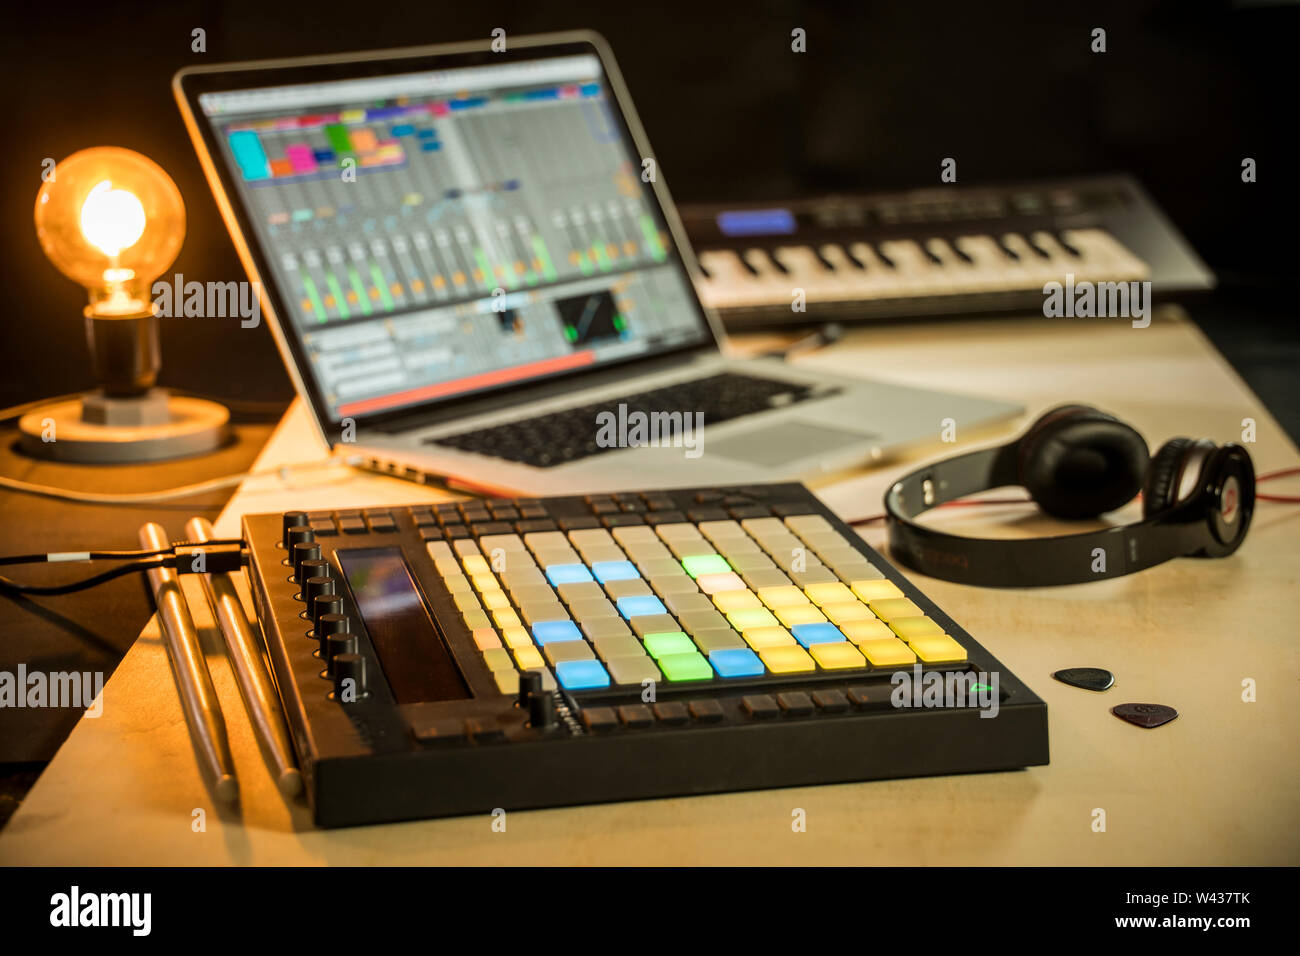 Musica elettronica di produzione - Apple Macbook con Ableton Live music software, spingere midi pad controller Foto Stock